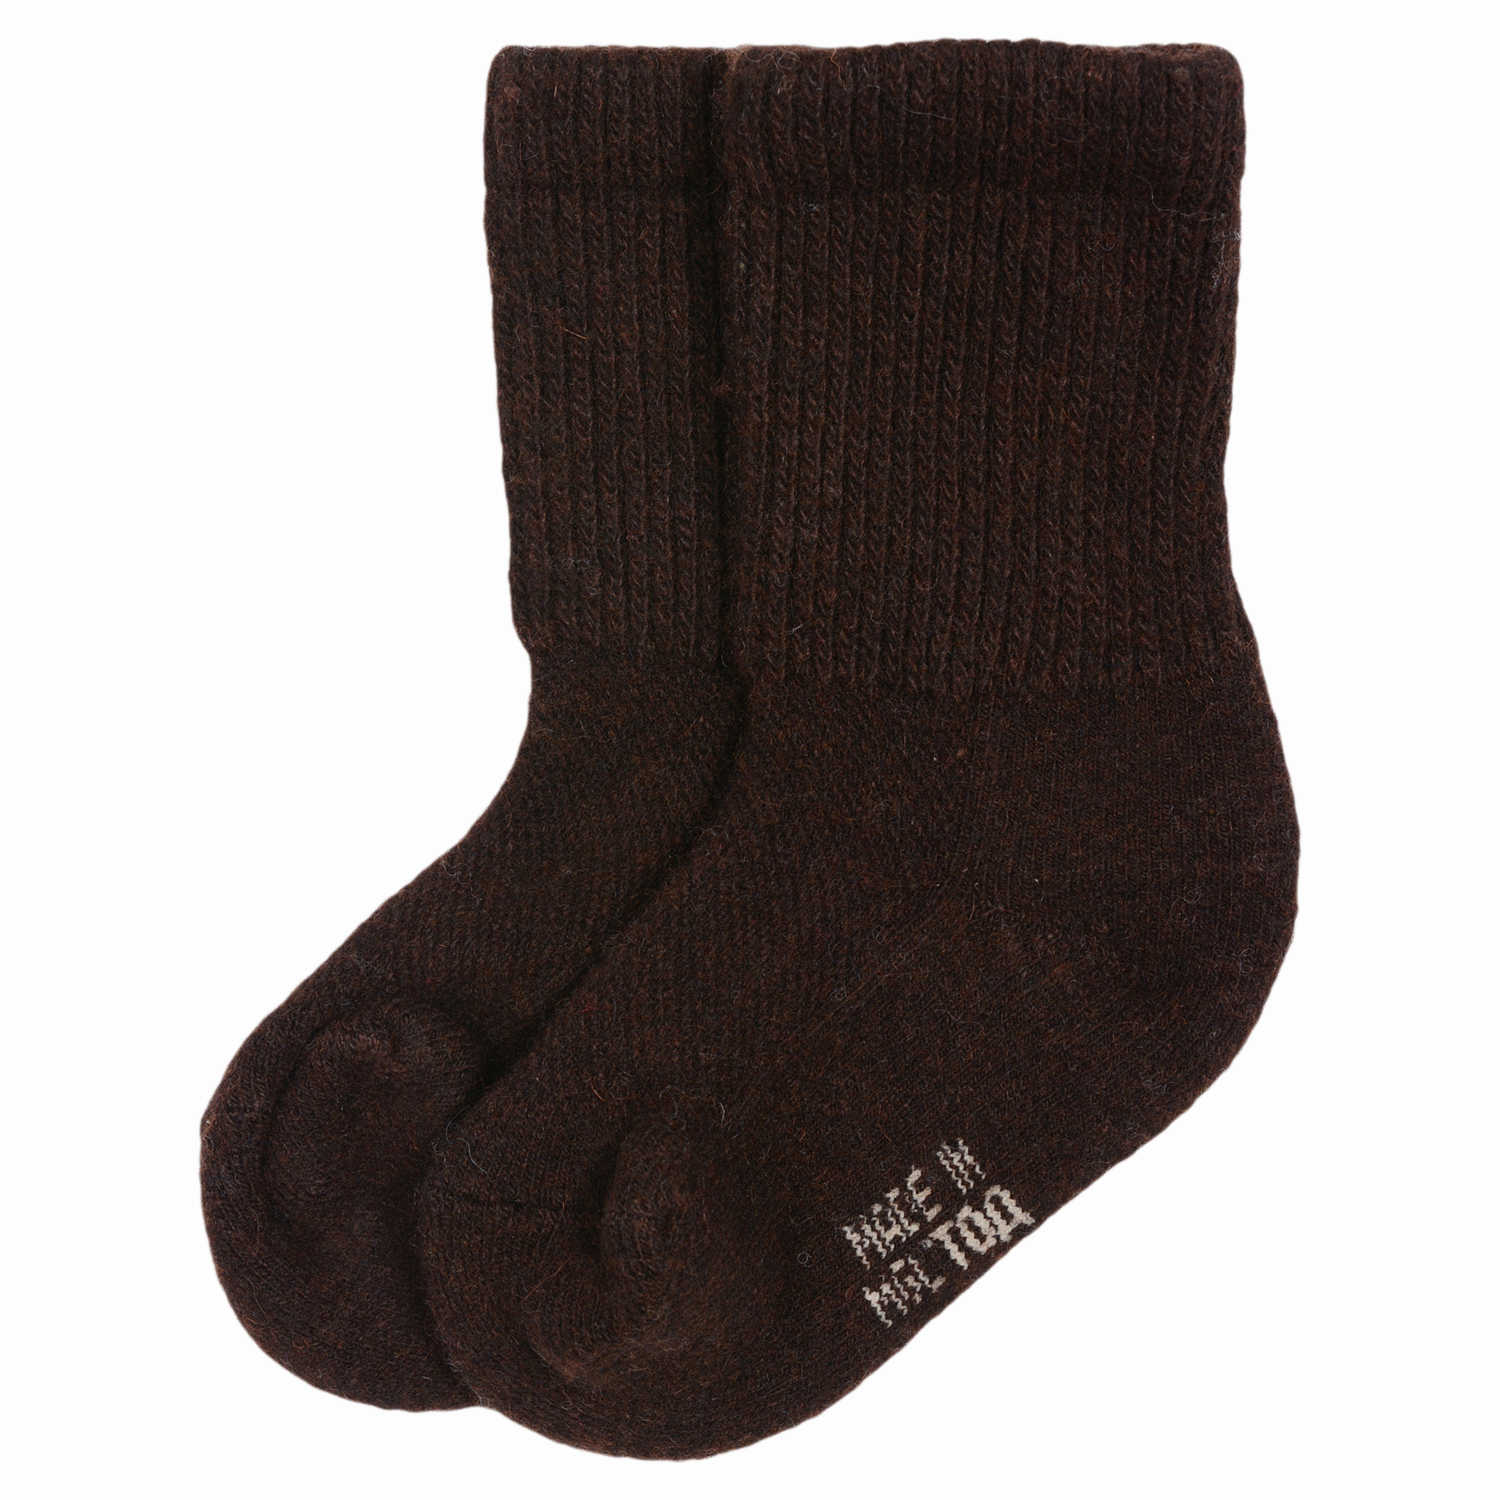 

Детские носки из монгольской шерсти Монголка 02104 размер 16-18, Коричневый, 02104